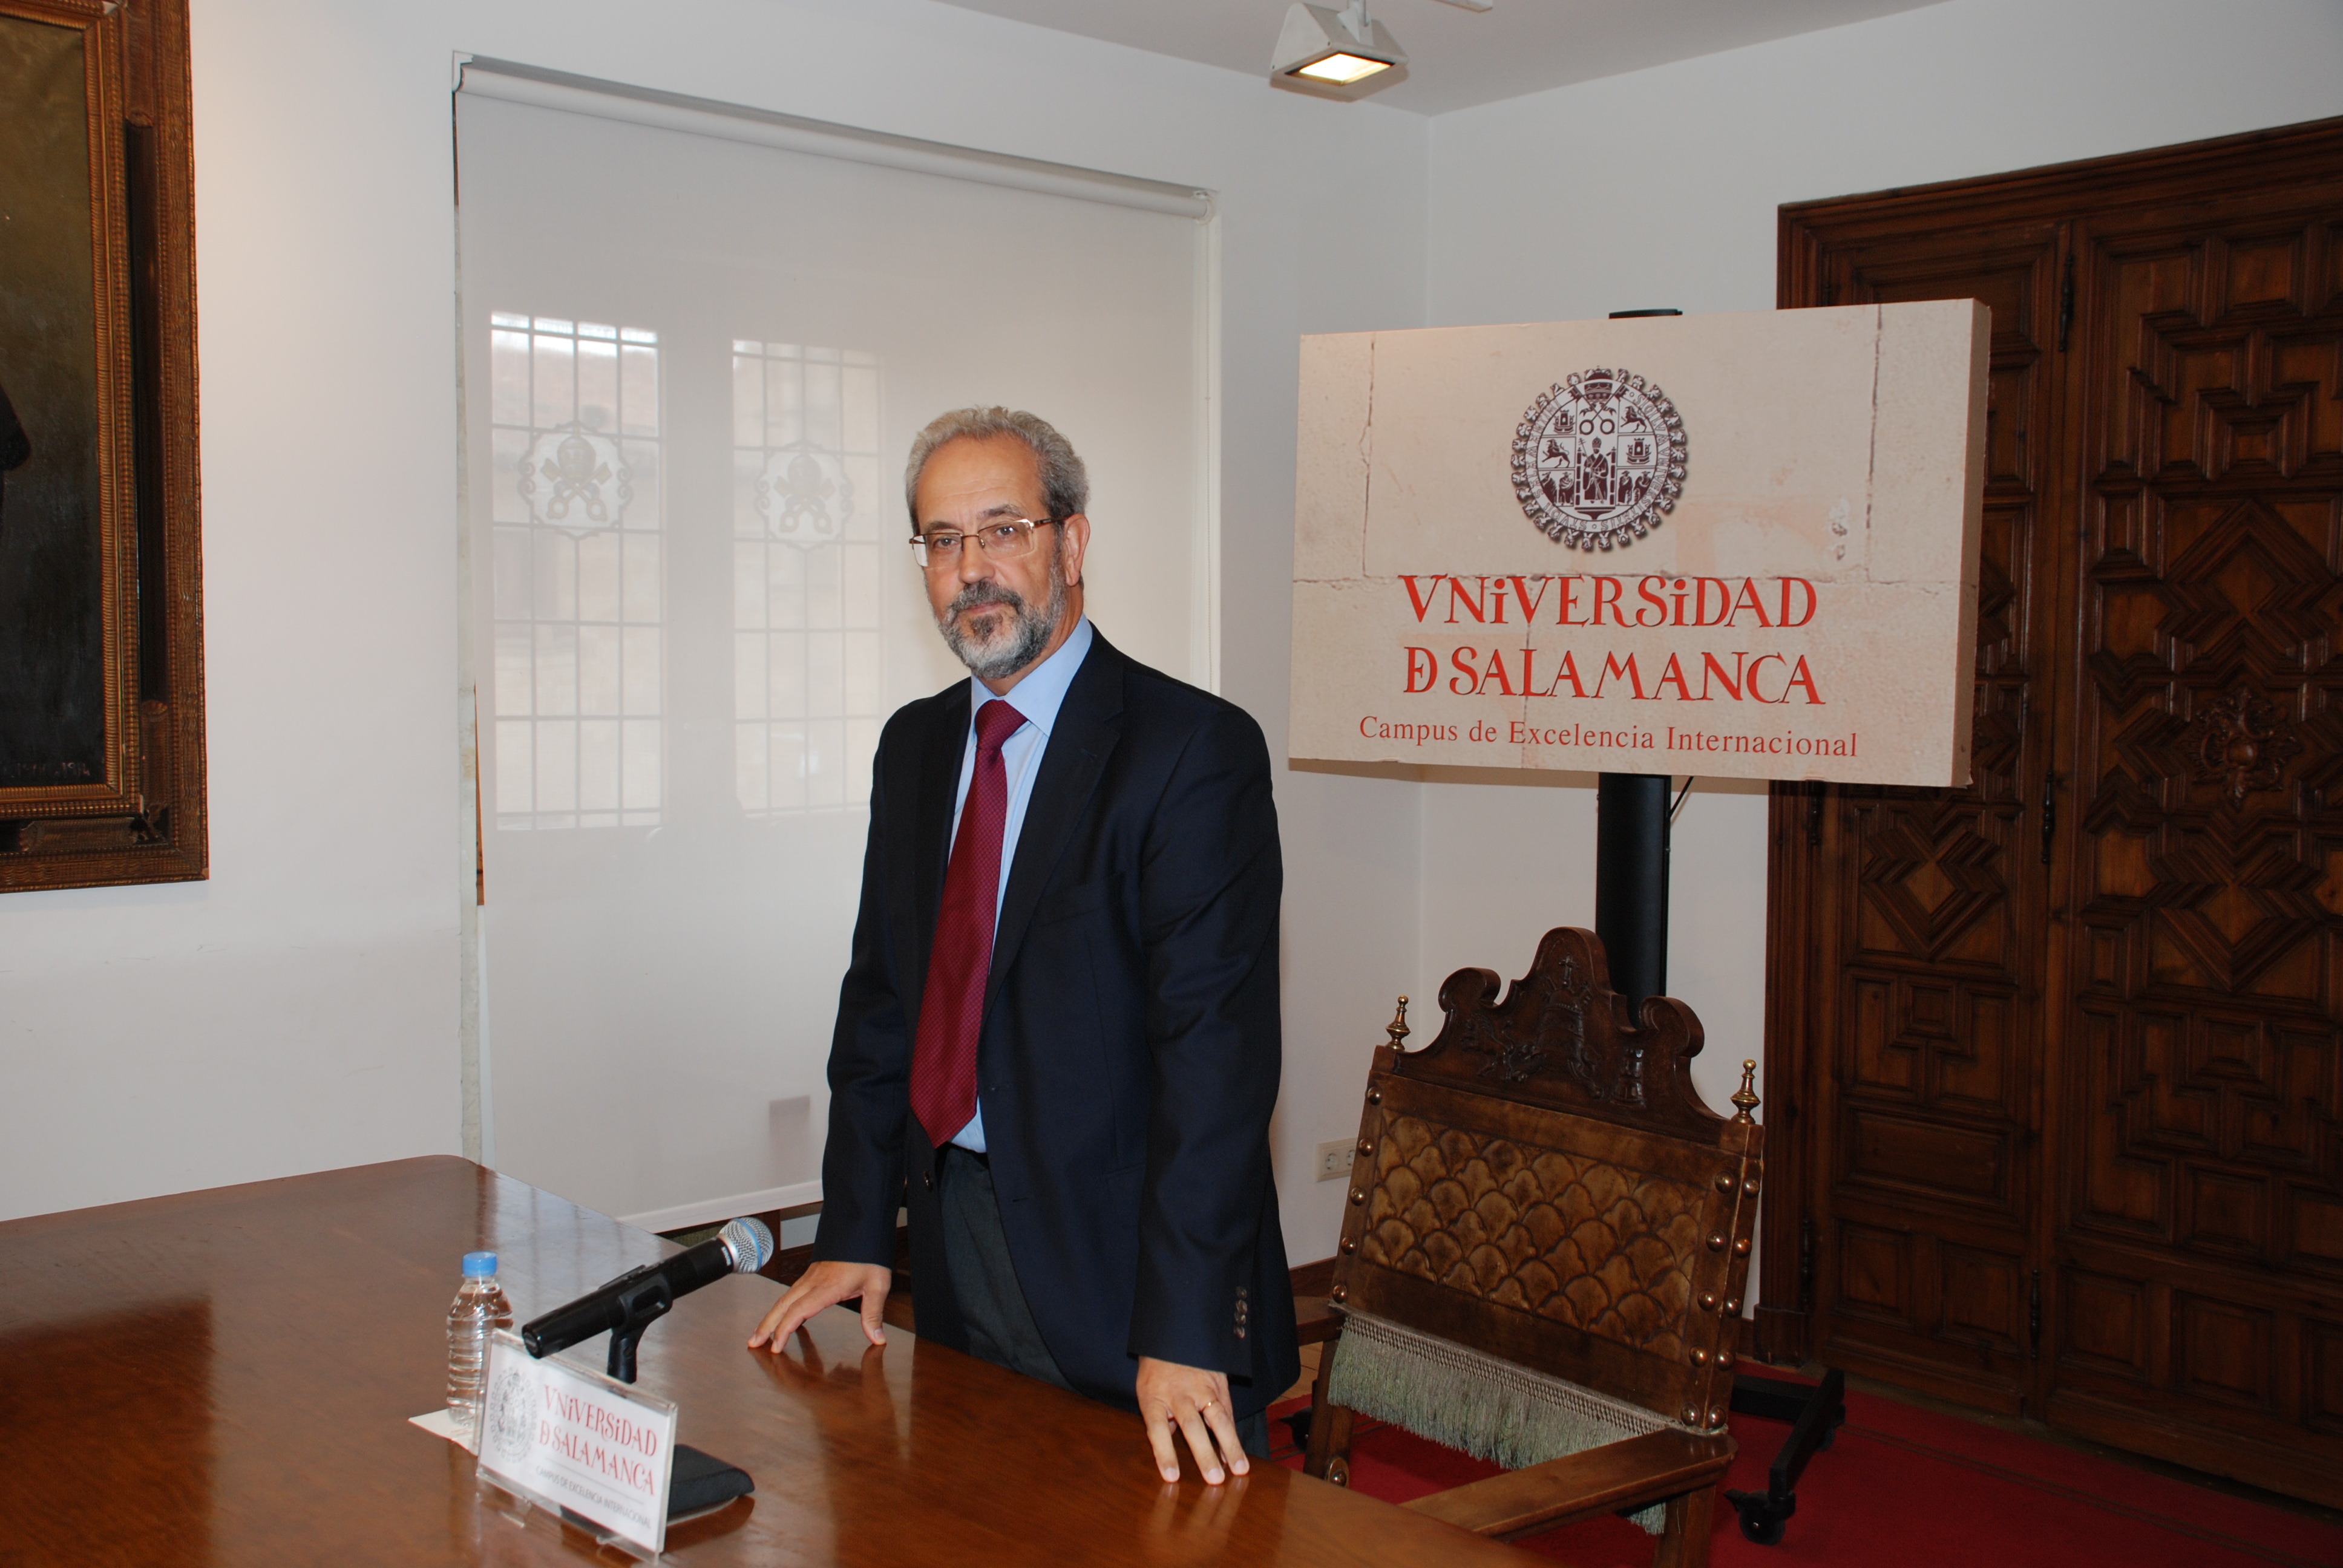 El rector Daniel Hernández Ruipérez procederá a la convocatoria de elecciones en la Universidad de Salamanca el próximo 14 de octubre